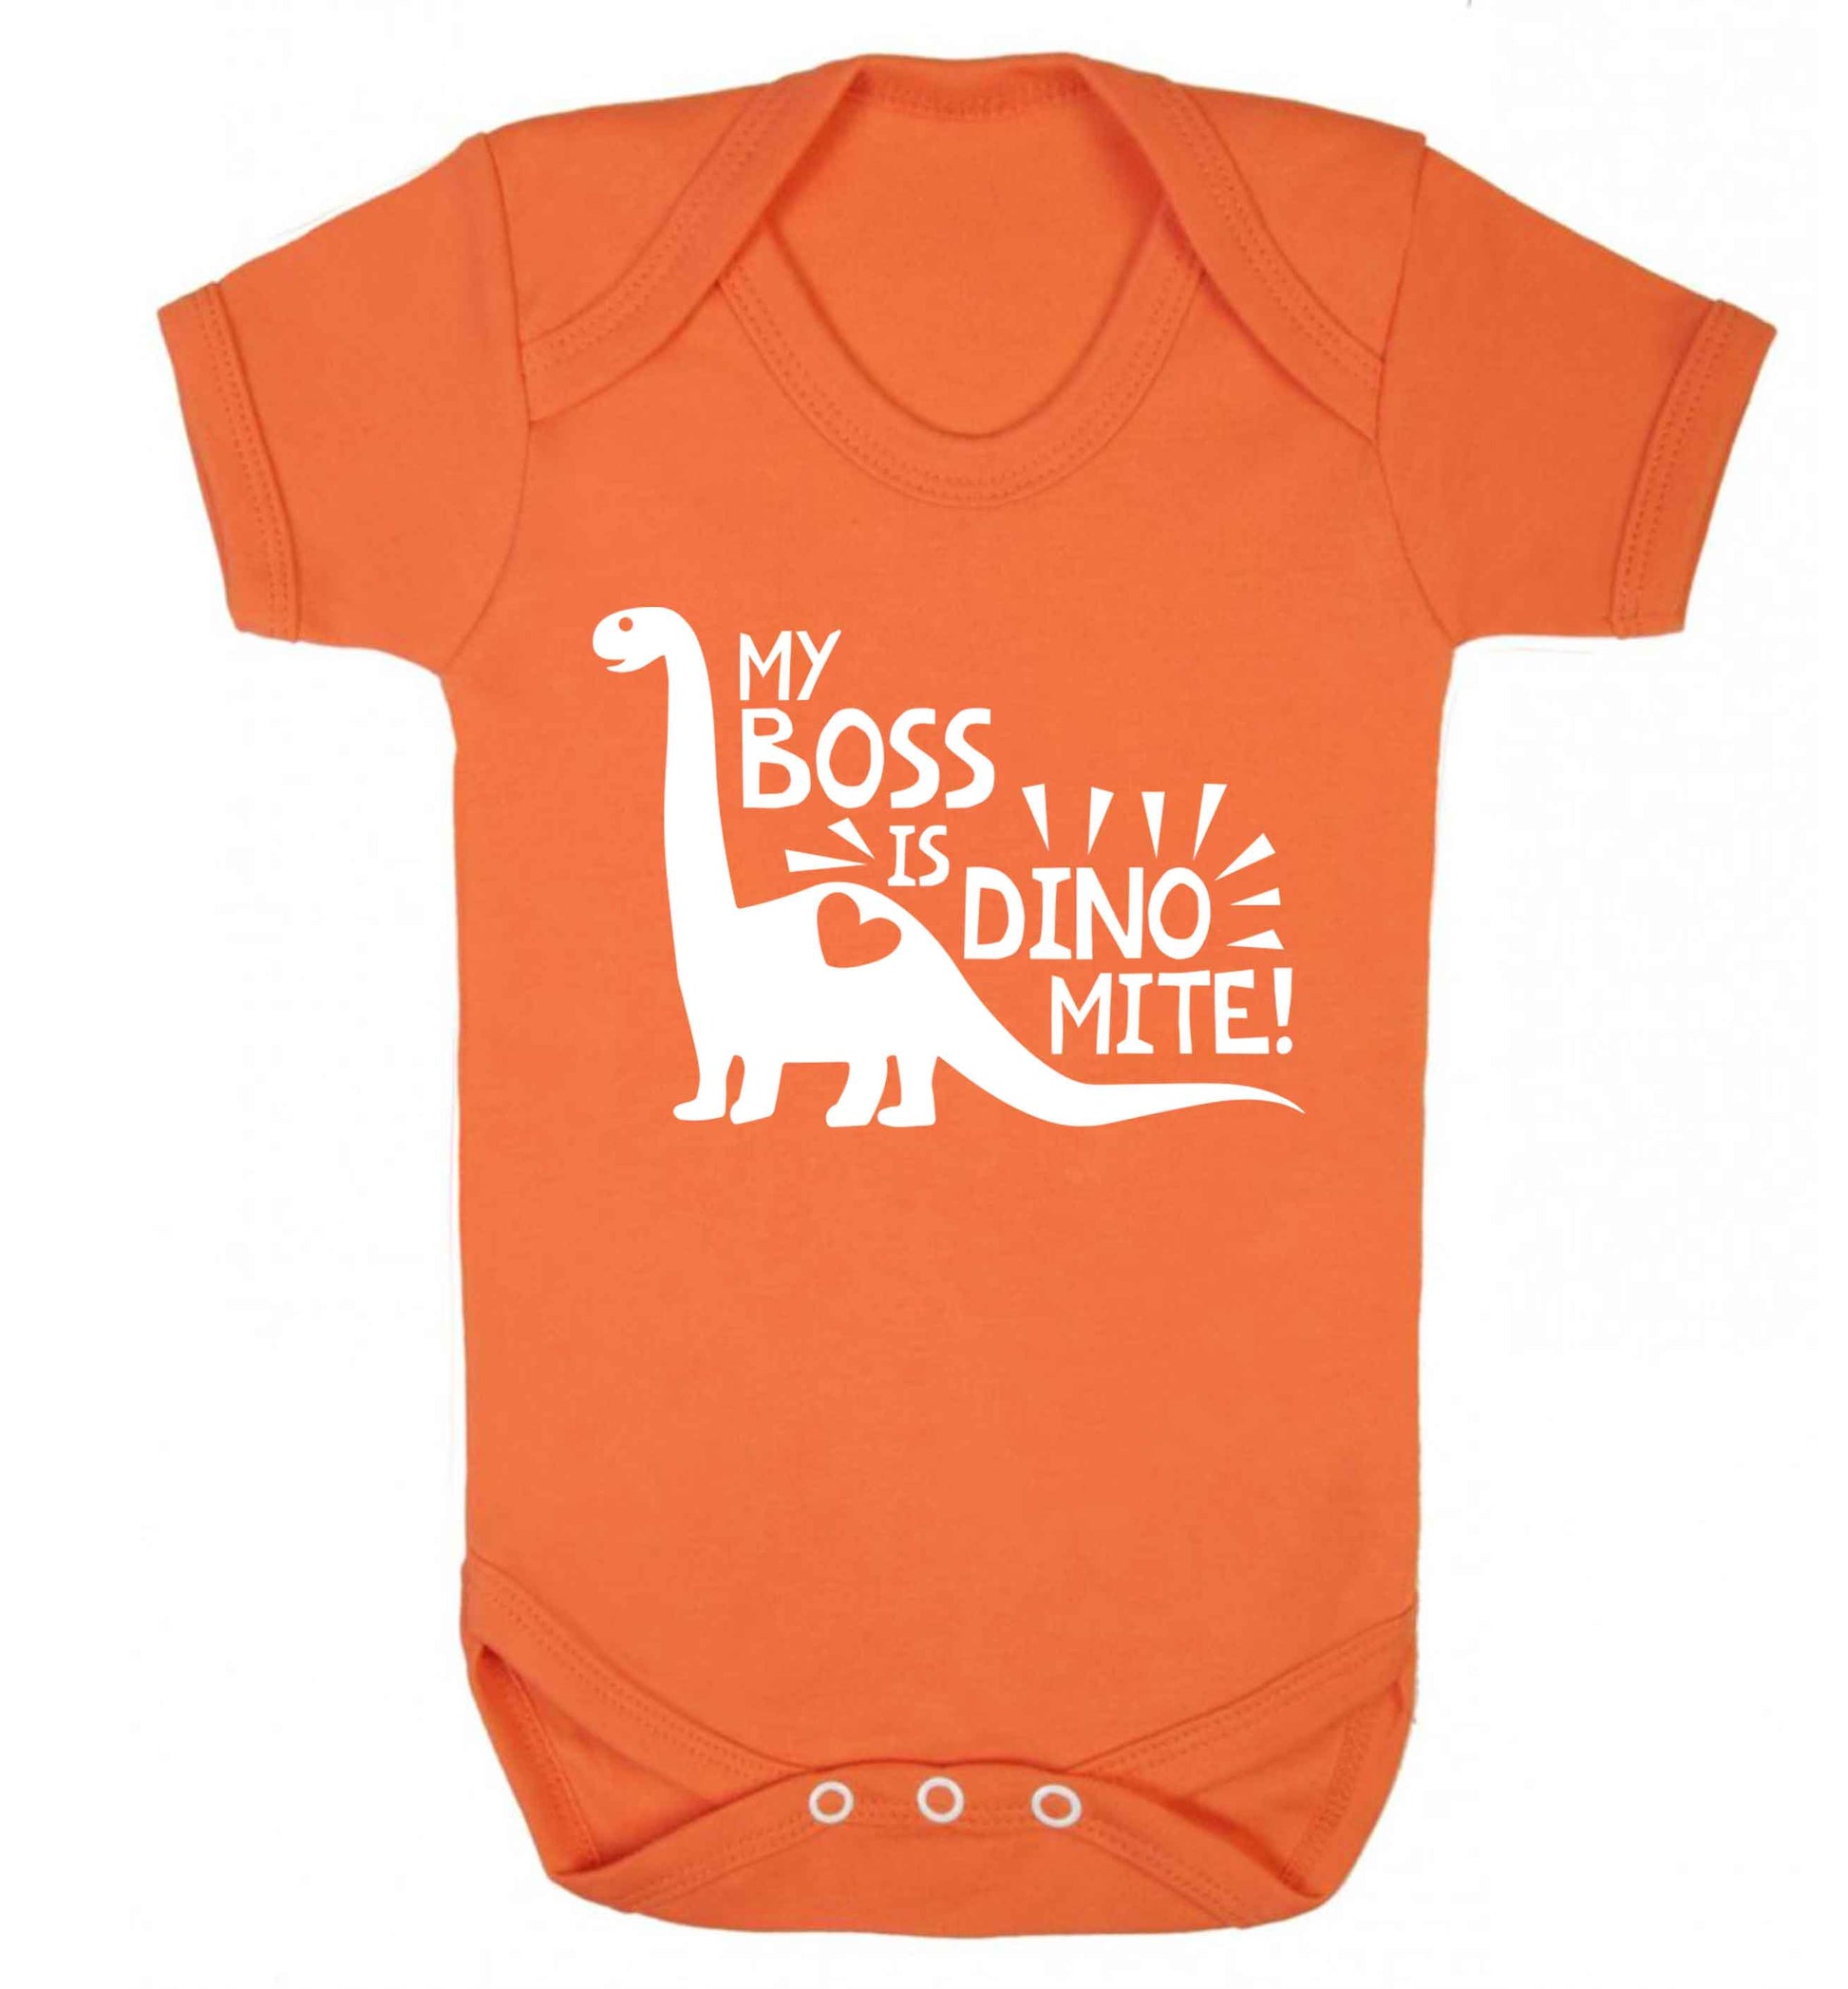 My boss is dinomite! Baby Vest orange 18-24 months